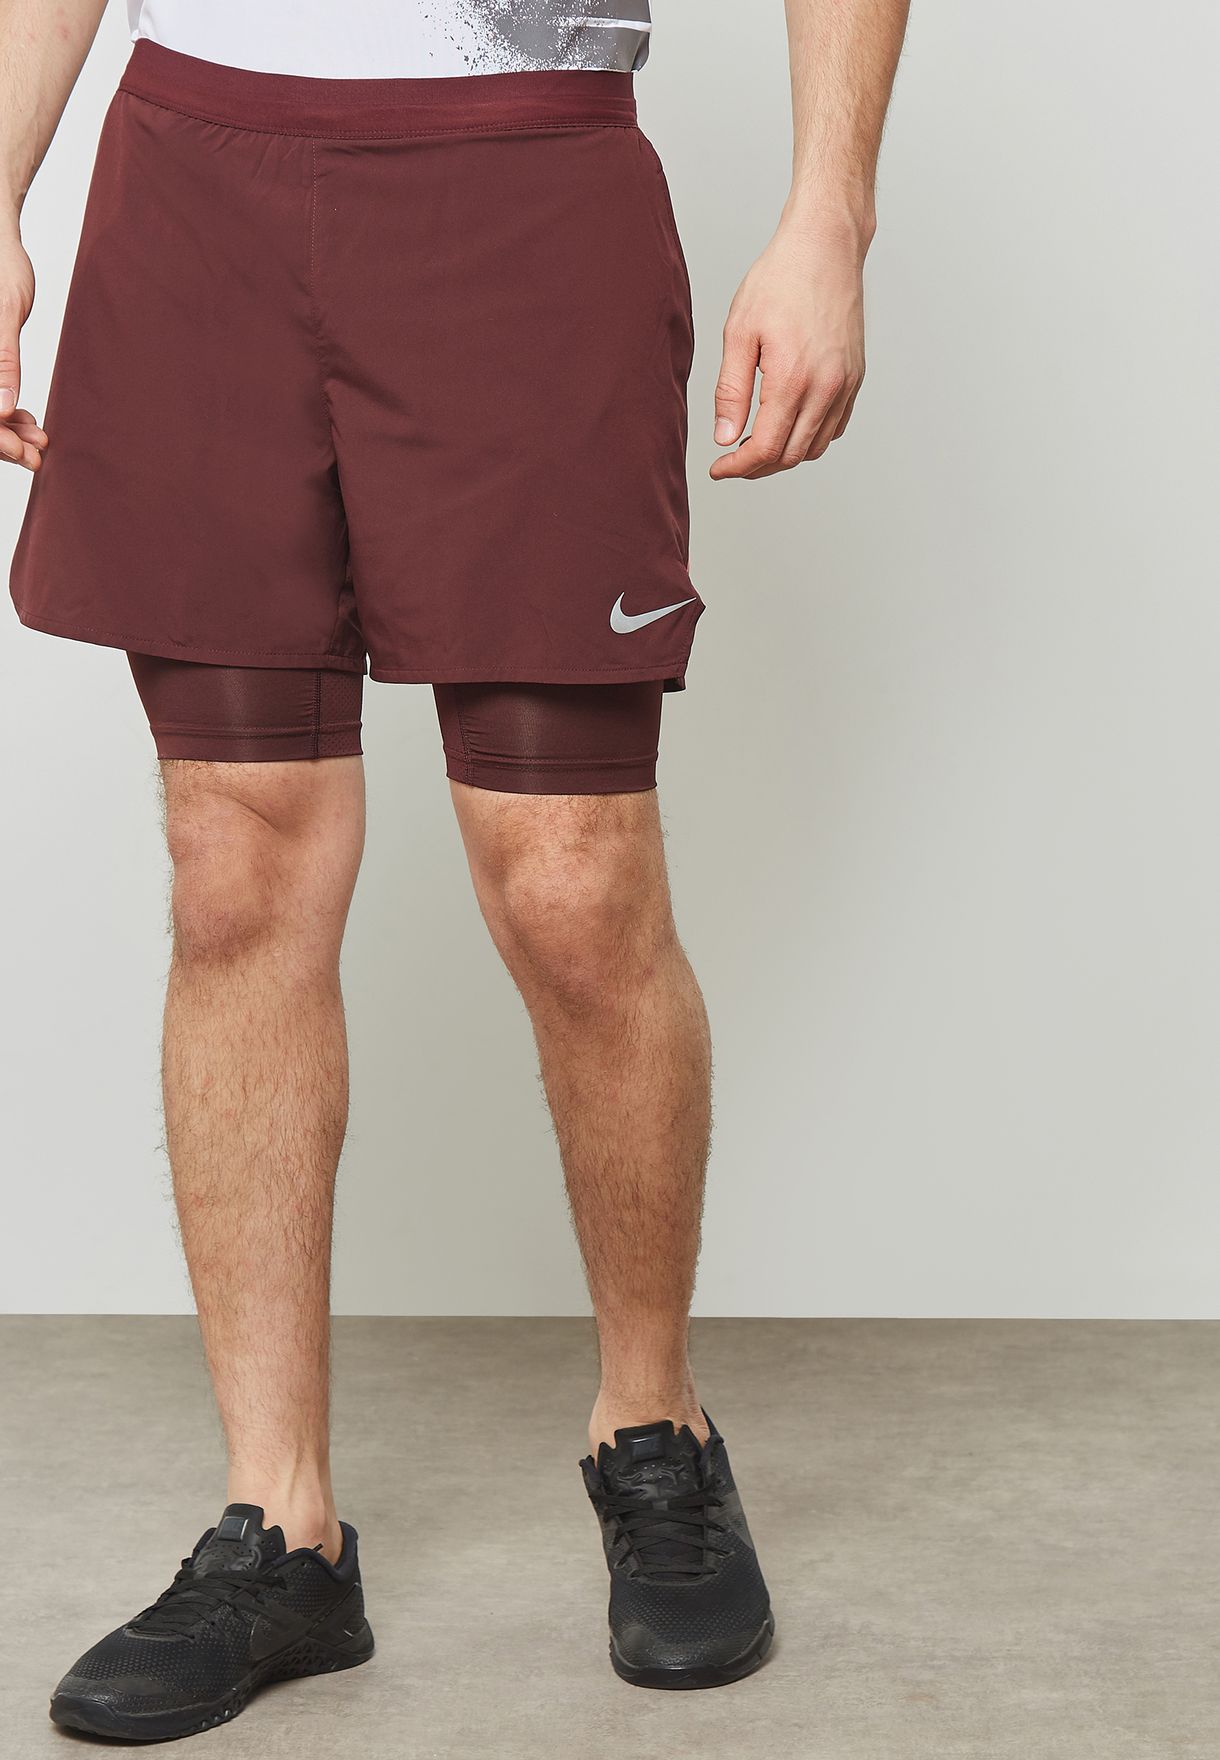 burgundy nike shorts mens